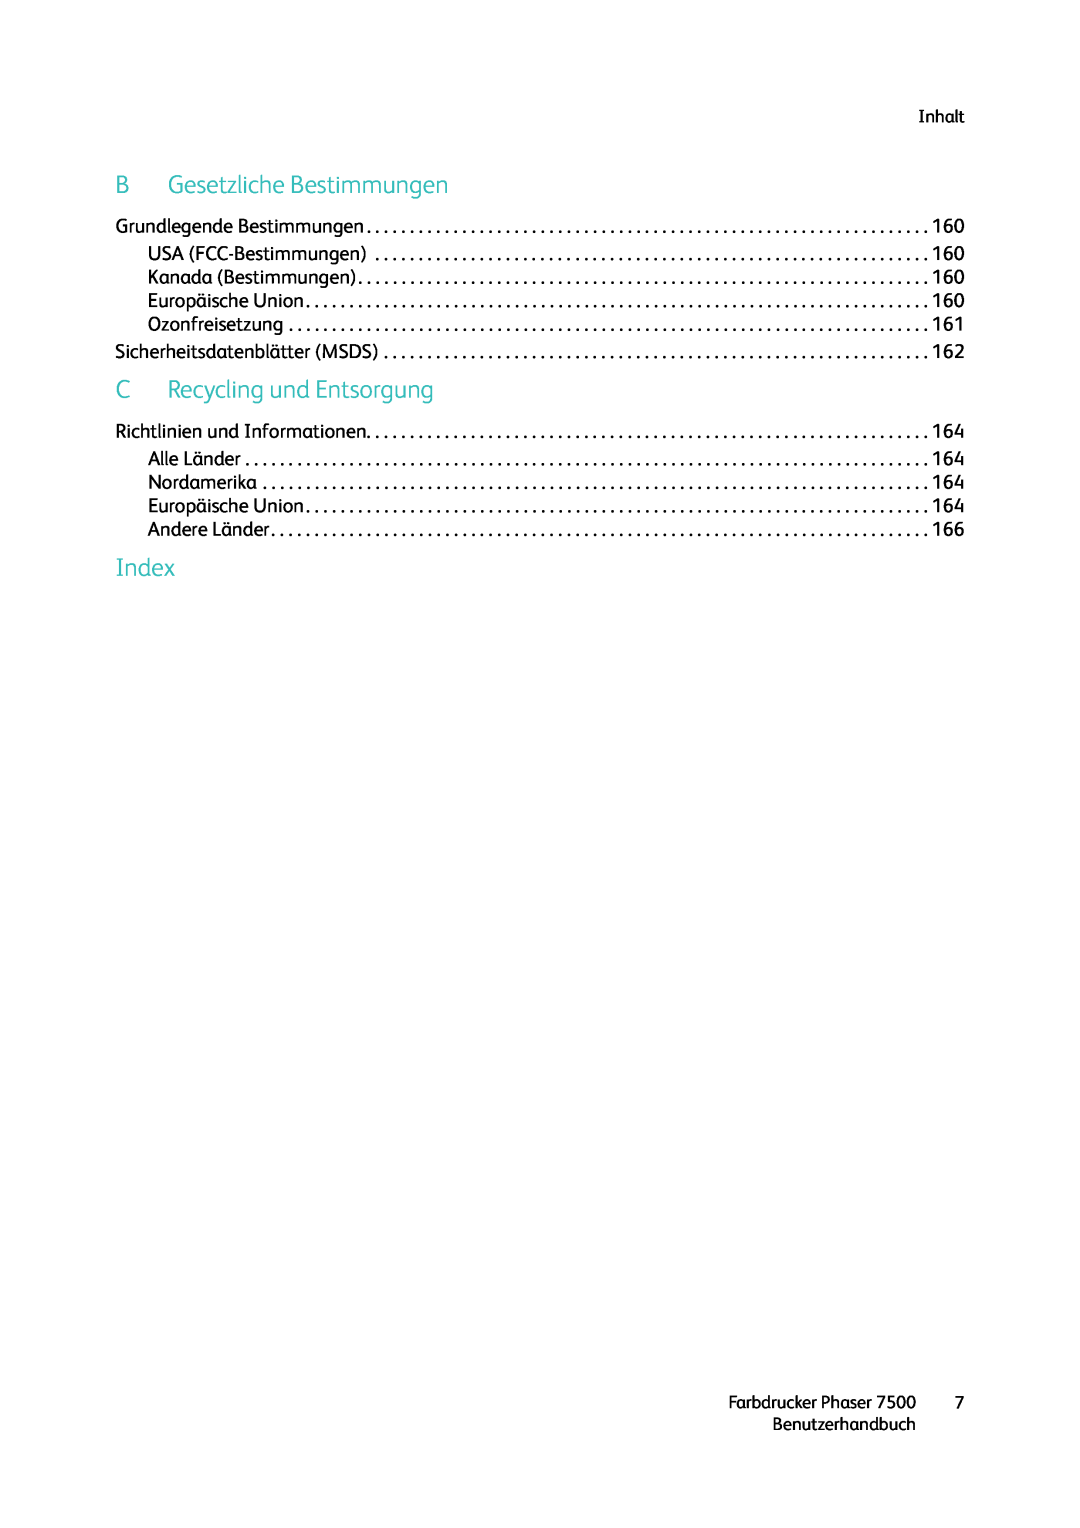 Xerox 7500 color printer manual BGesetzliche Bestimmungen, CRecycling und Entsorgung, Index, Inhalt, Benutzerhandbuch 